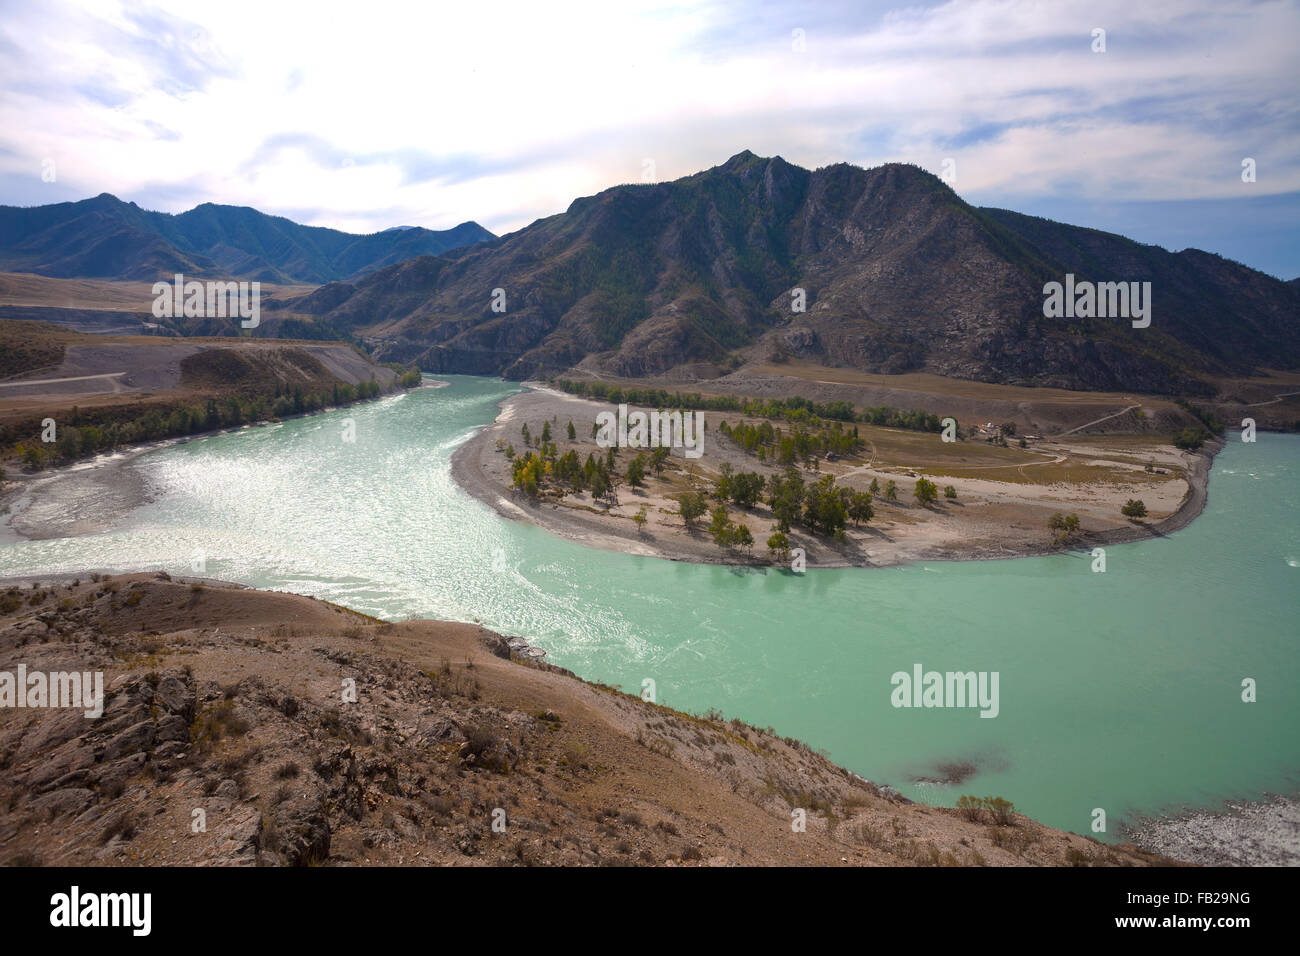 Blick auf den Zusammenfluss von Tschuja und Katun, Katun Tal, Altai-Gebirge Russland Stockfoto